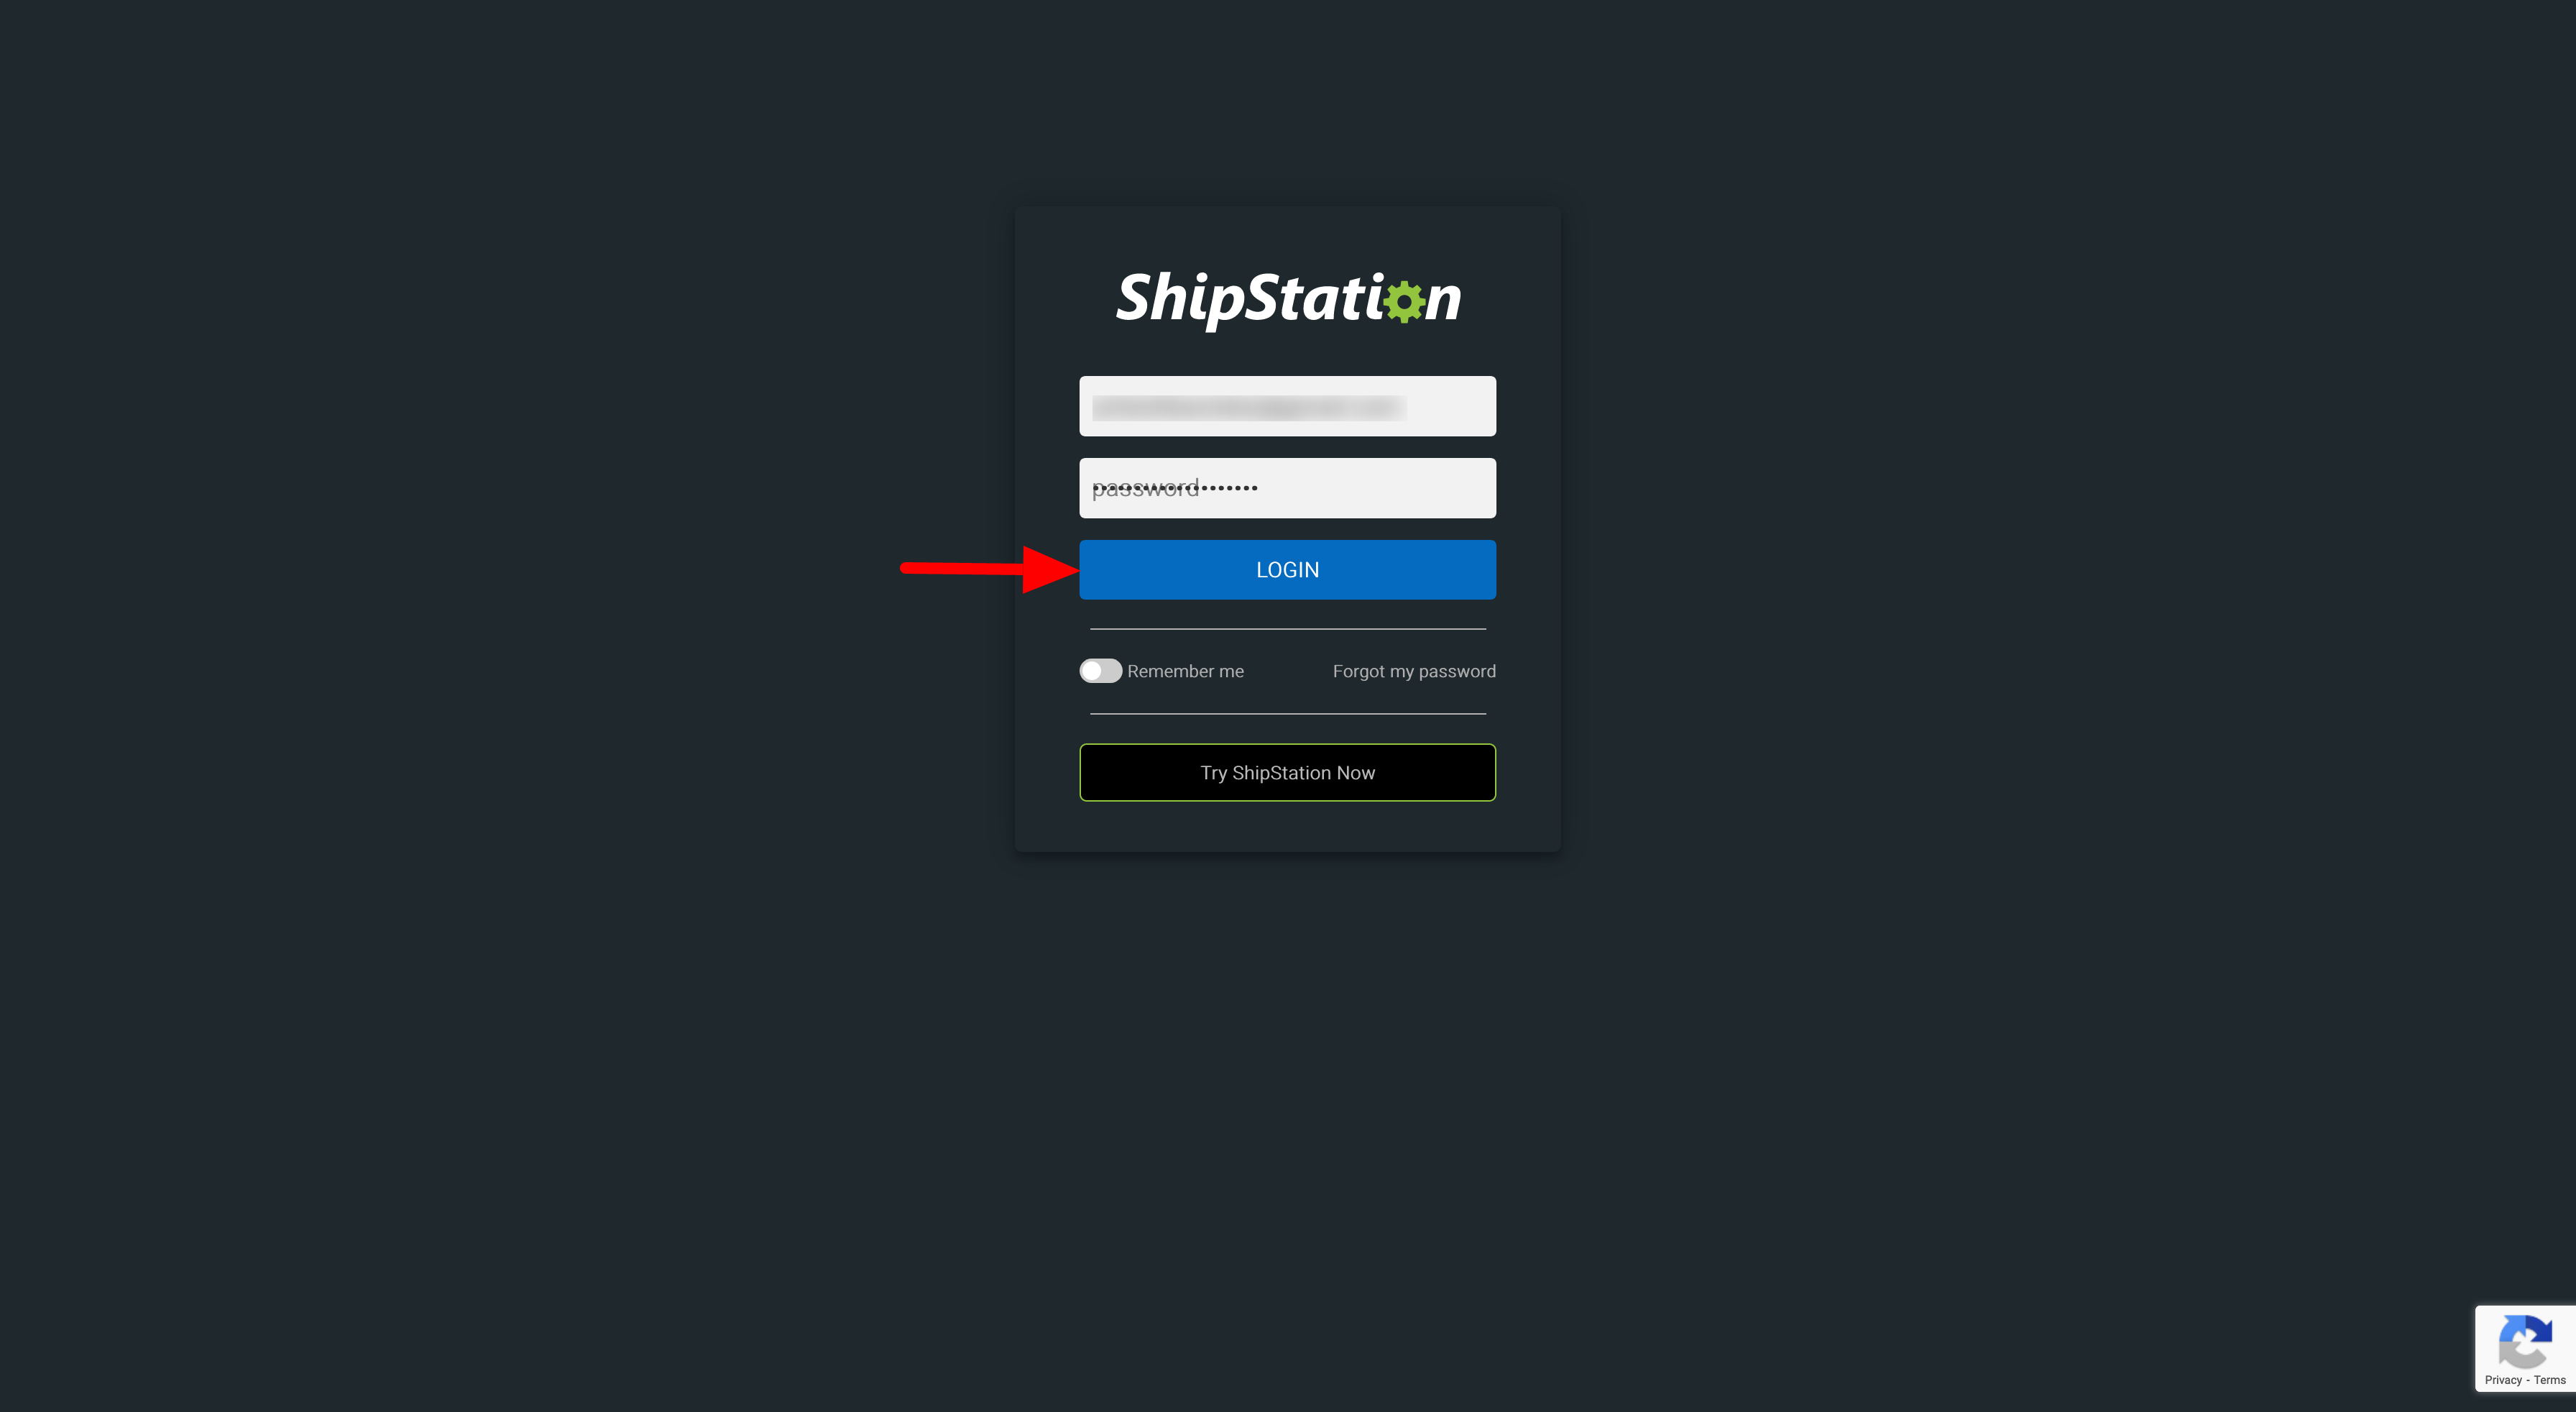 shipstation login screen